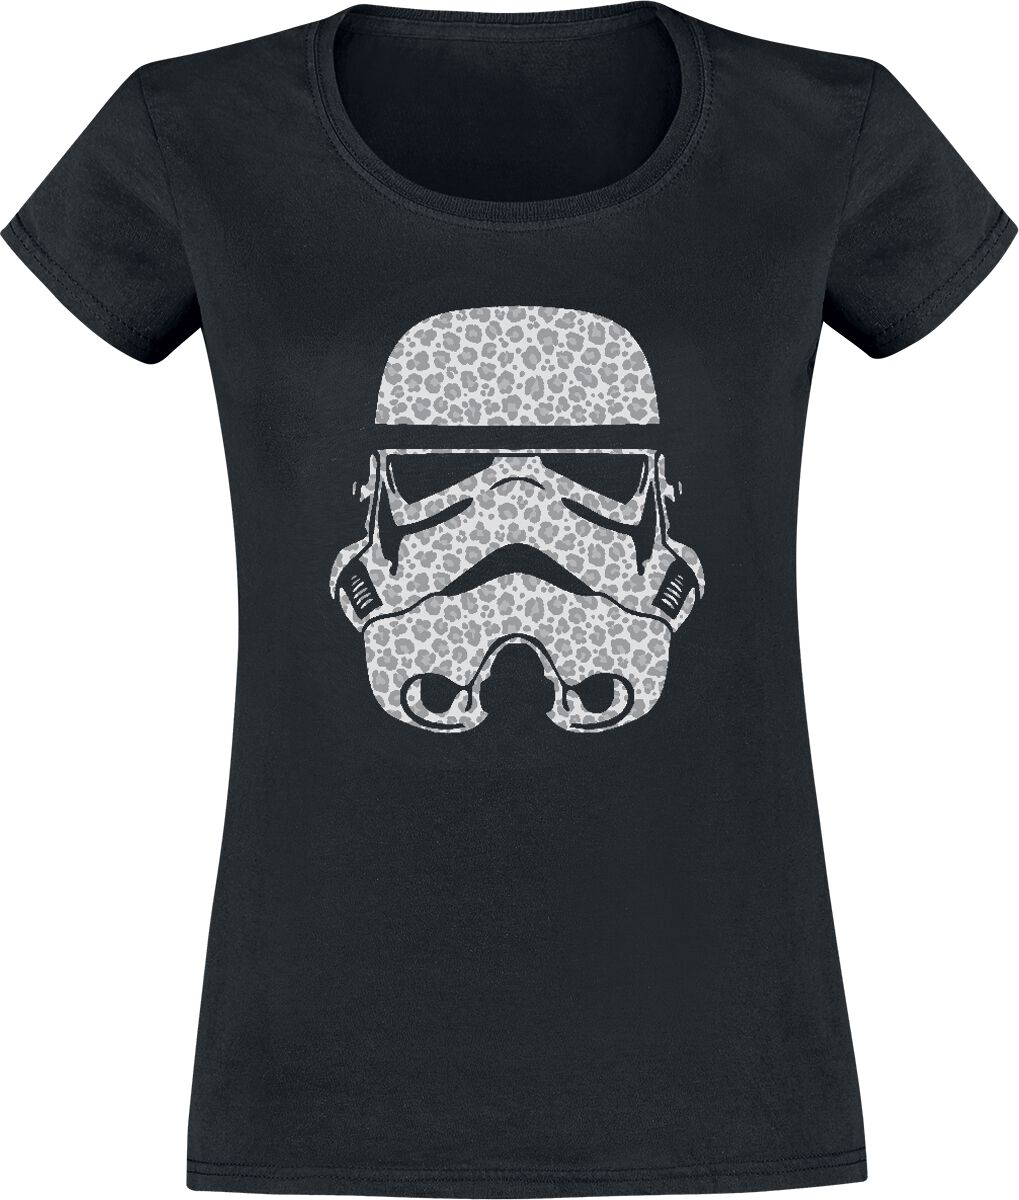 Star Wars Leopard Trooper T-Shirt black